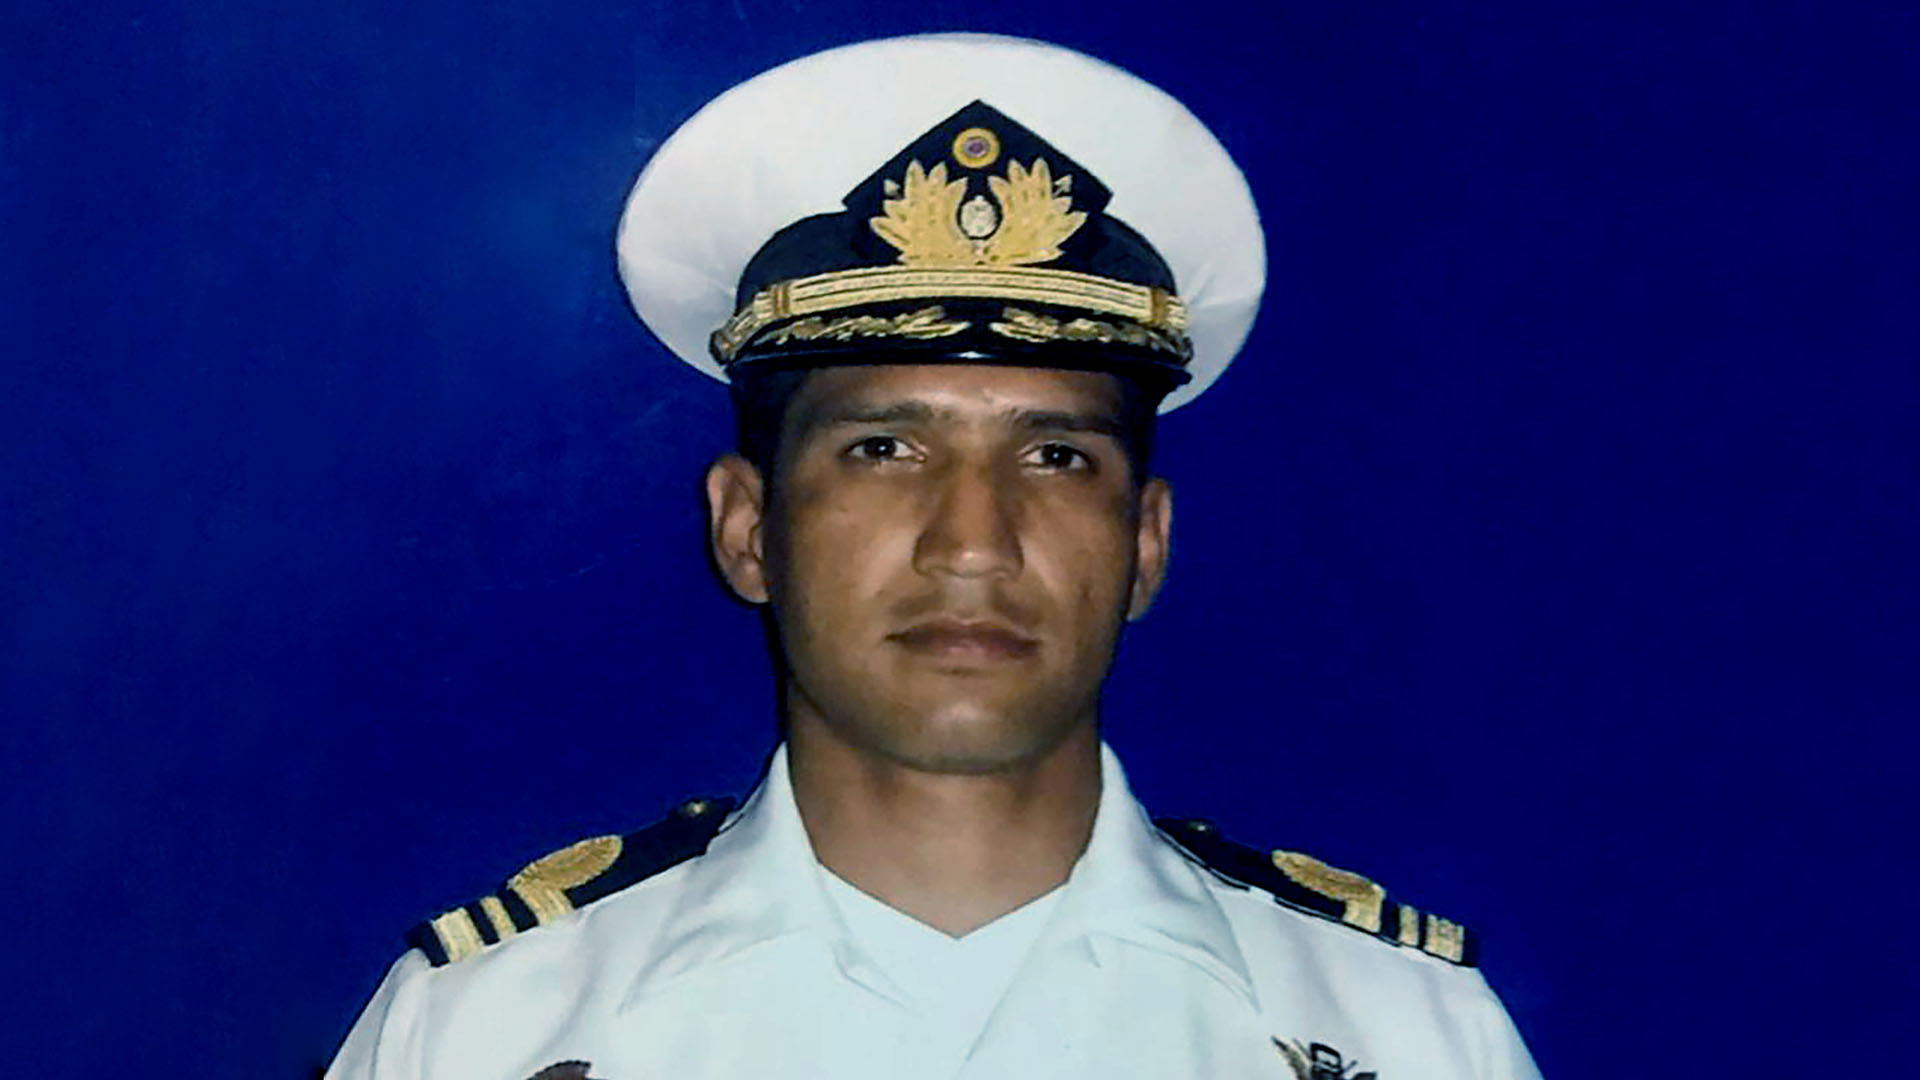 Forense detalló en juicio lesiones por tortura que presentó cadáver del capitán Acosta Arévalo